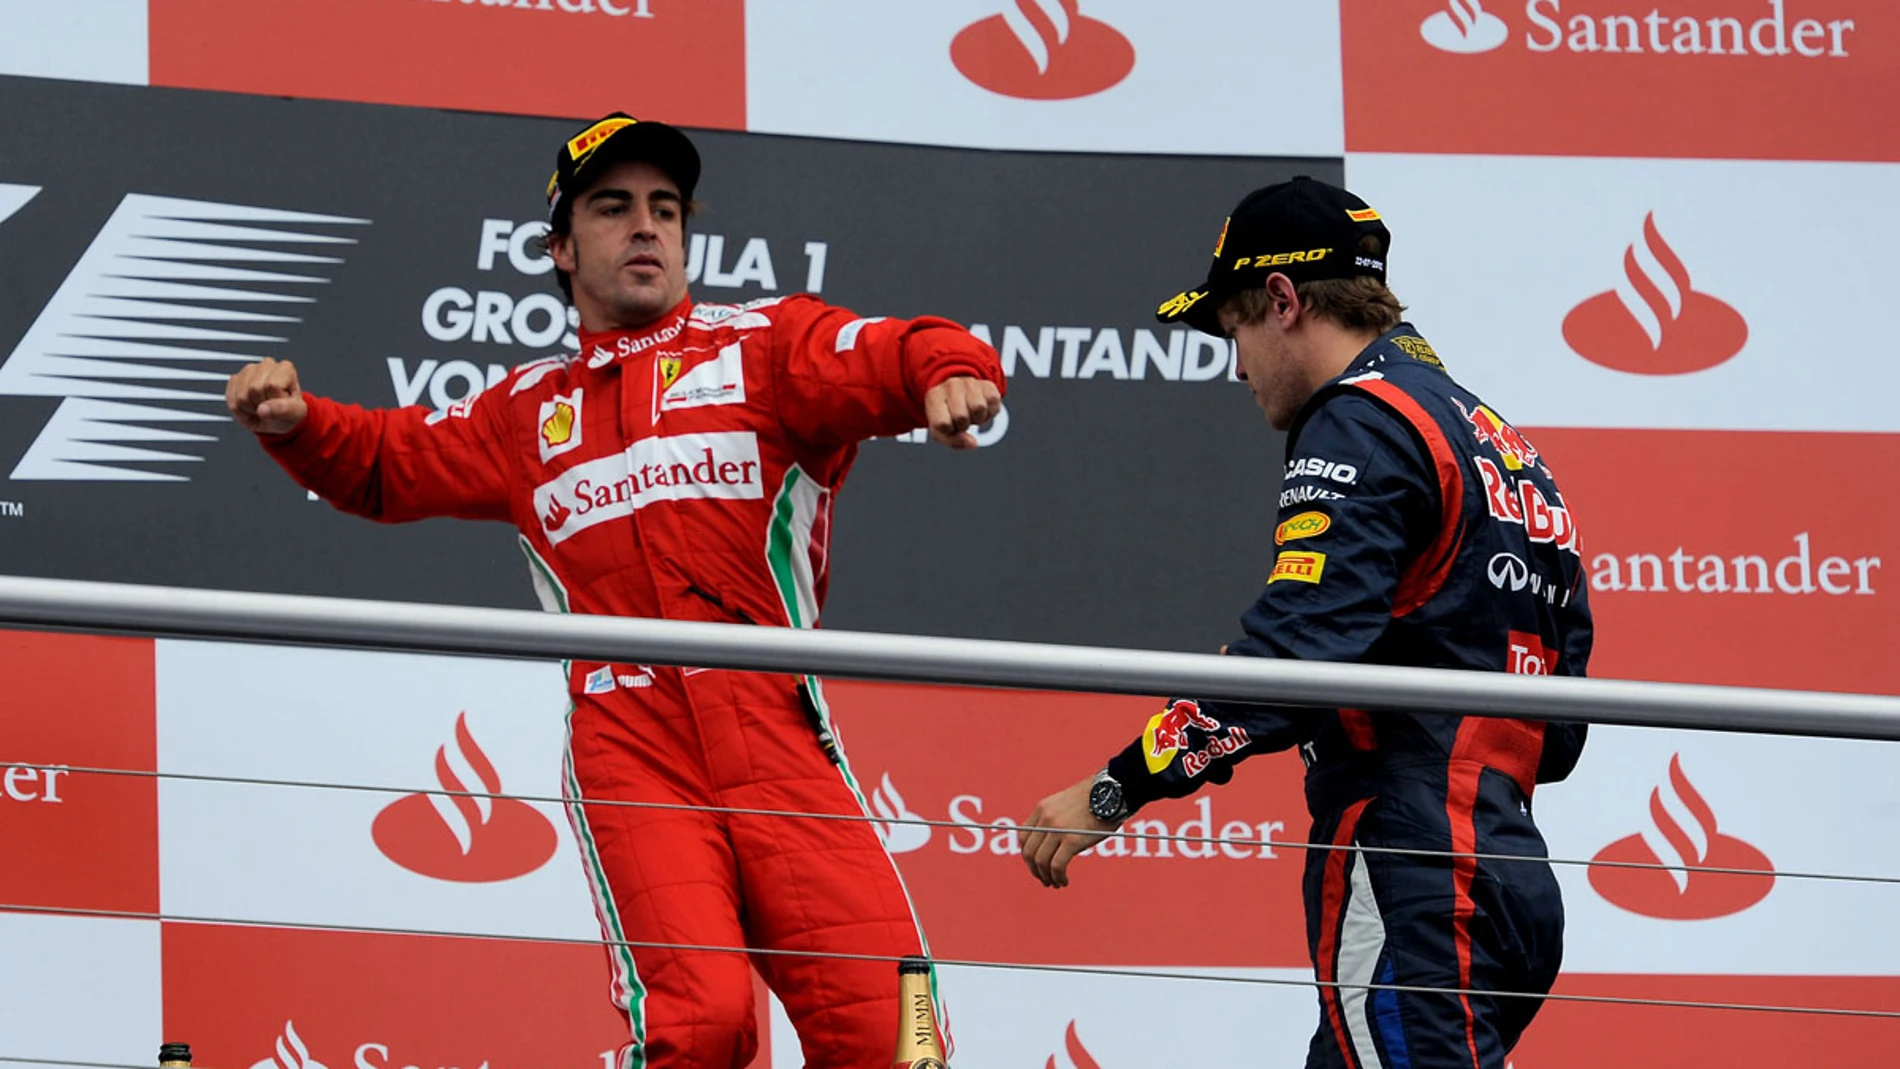 Fernando Alonso, en el podio del GP de Alemania junto a Vettel